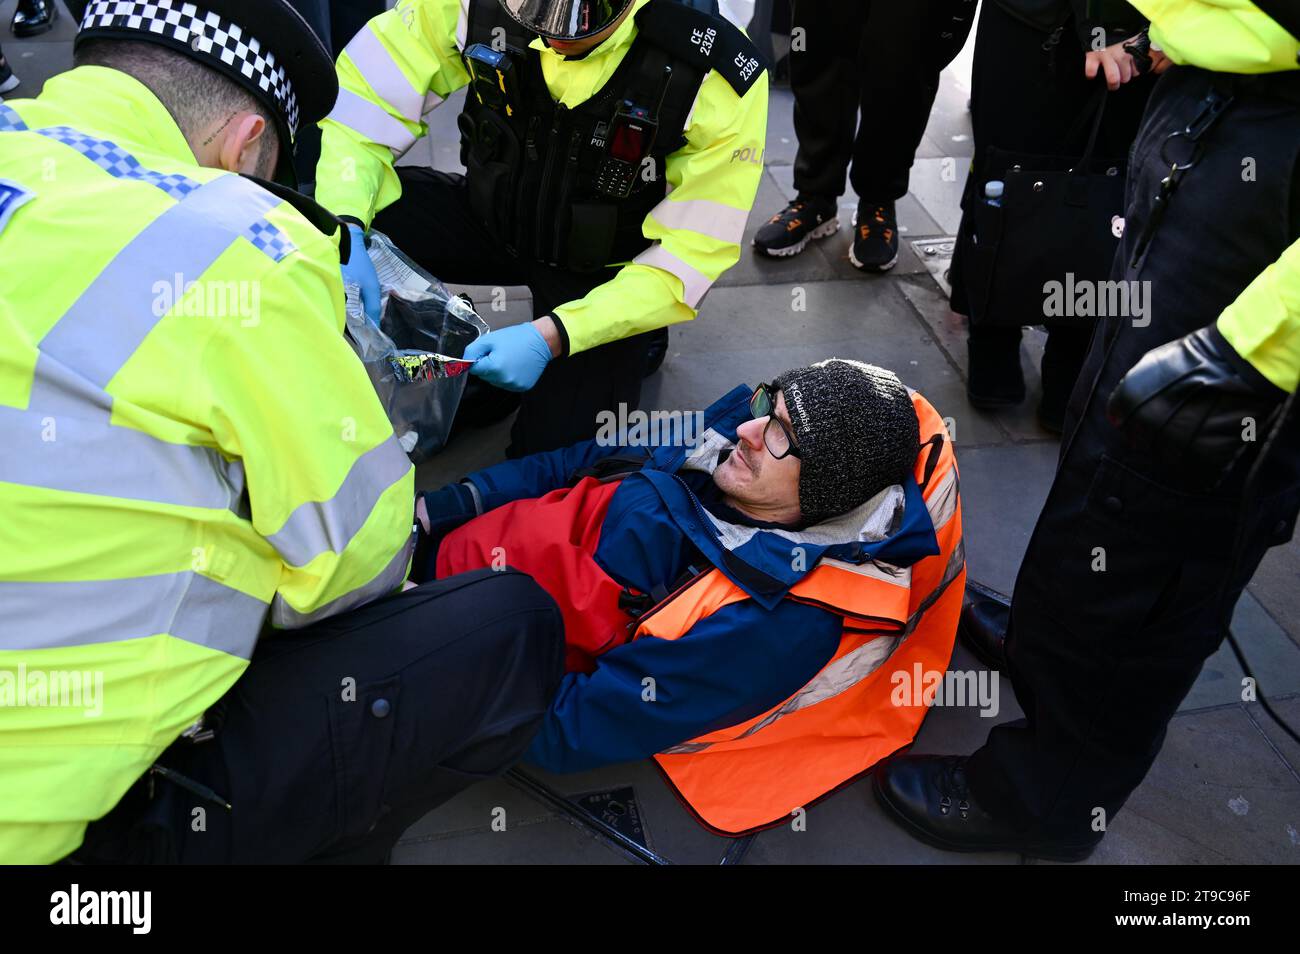 Londres, Royaume-Uni. Quatre personnes portant des bannières Just Stop Oil ont été arrêtées à Whitehall quand elles ont quitté le trottoir pour rejoindre la route. Les acteurs et les universitaires ont critiqué la «folie» climatique du gouvernement britannique et les limites à la protestation. Crédit : michael melia/Alamy Live News Banque D'Images